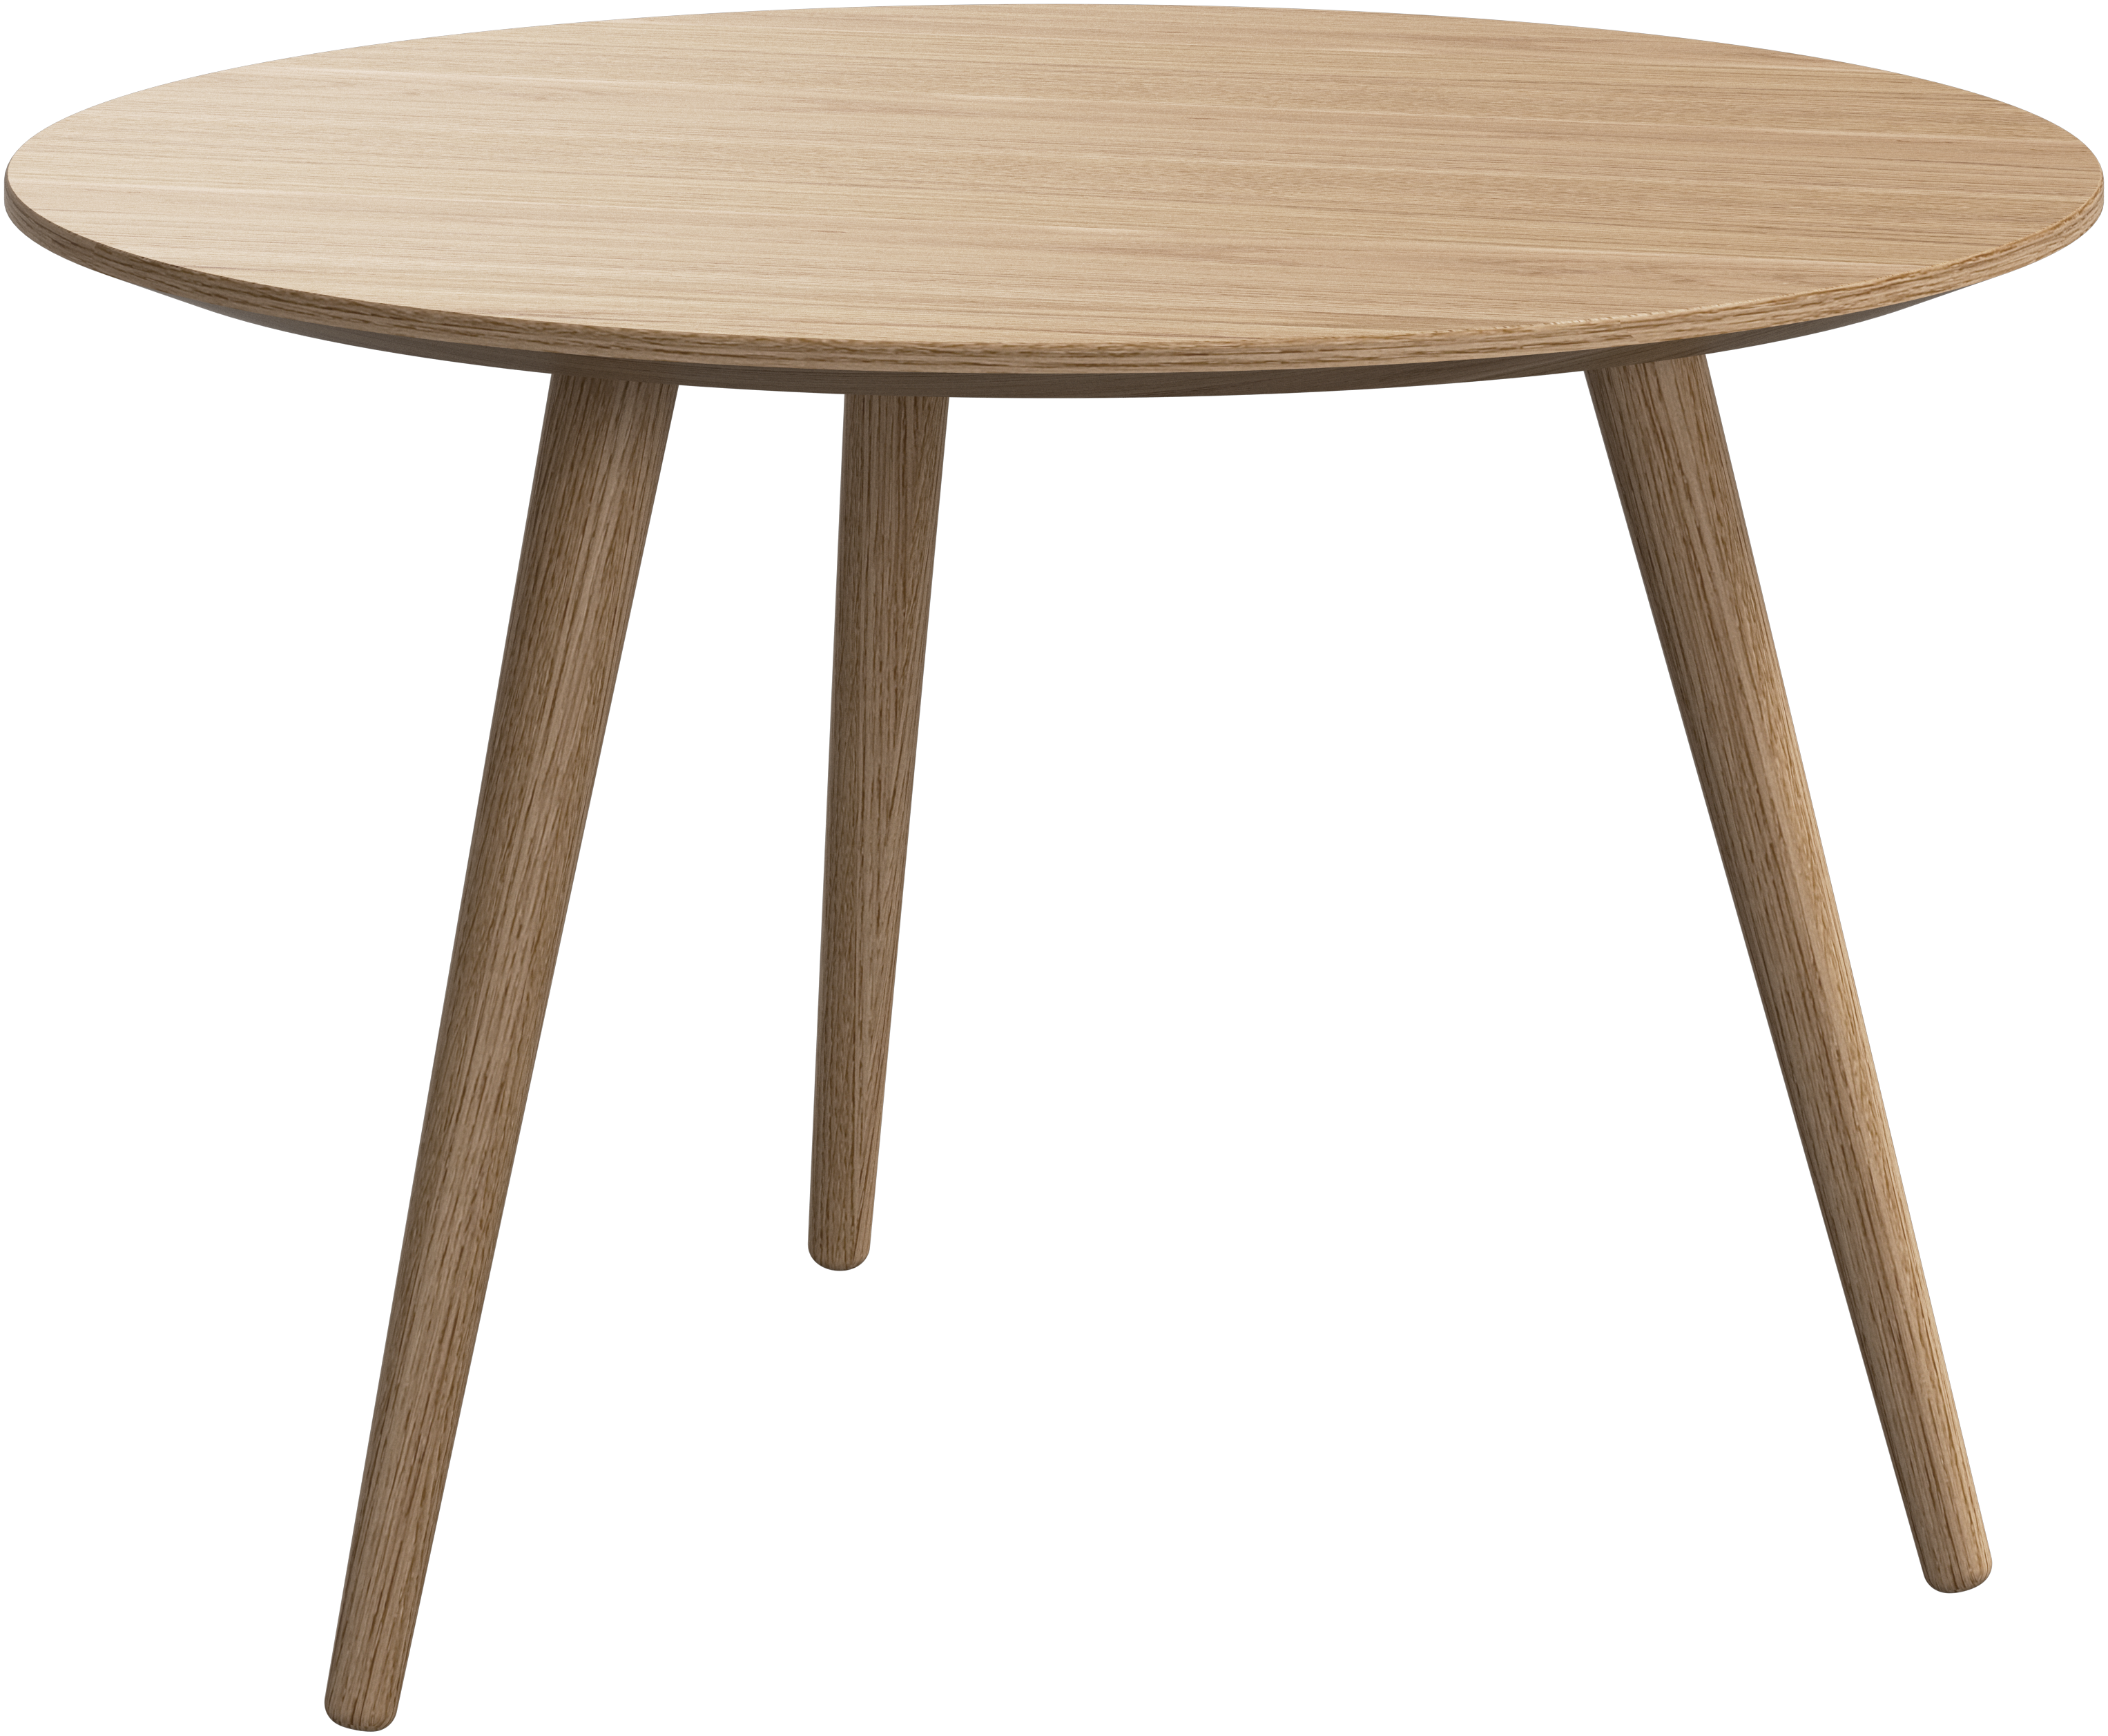 デザイナーコーヒーテーブル | すべてのデザインはこちら - BoConcept